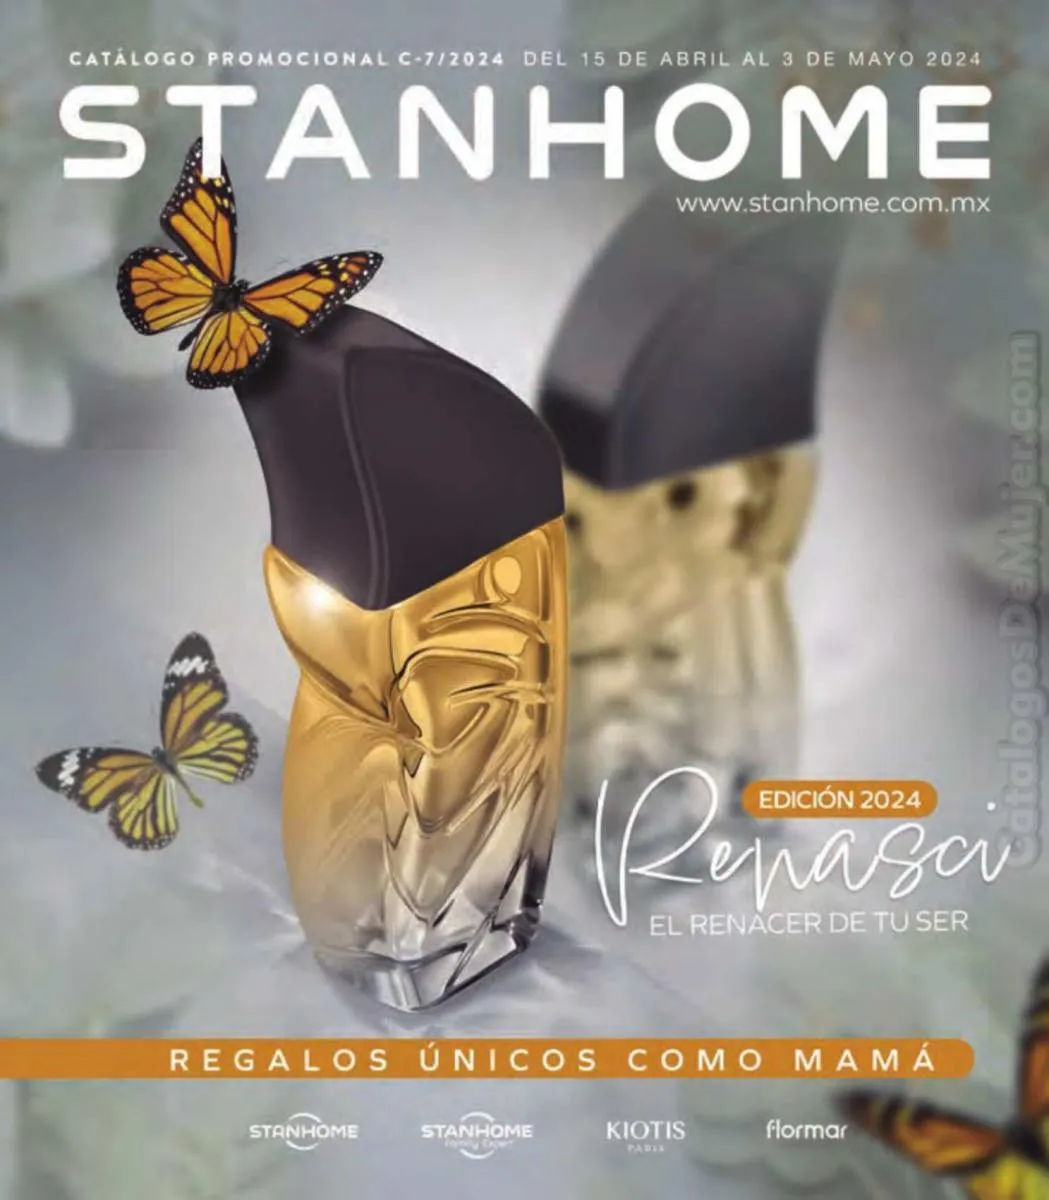 Сatálogo Stanhome campaña 7 2024 México